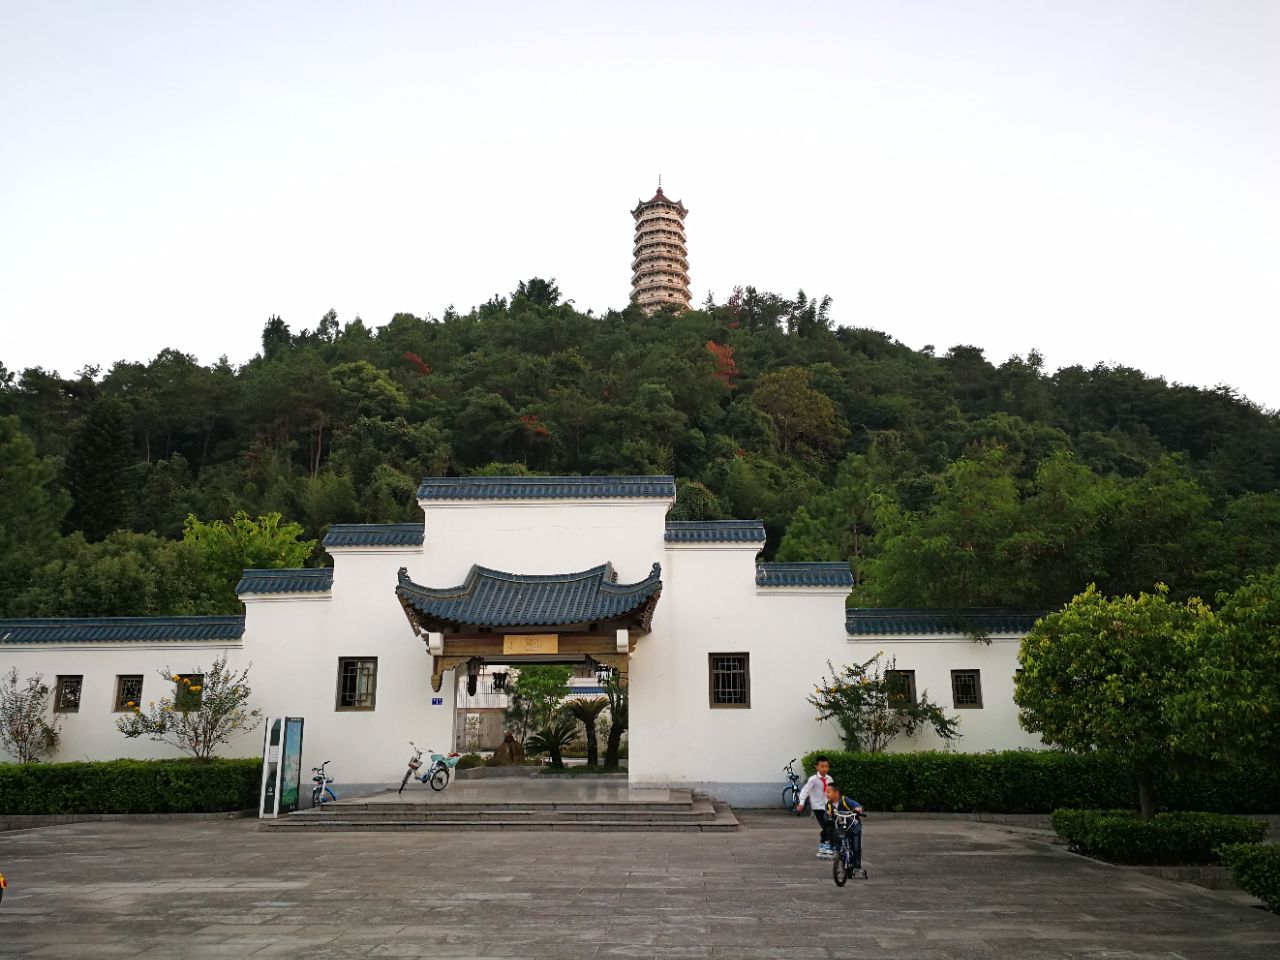 云南省龙陵县松山战役遗址 - 中国国家地理最美观景拍摄点